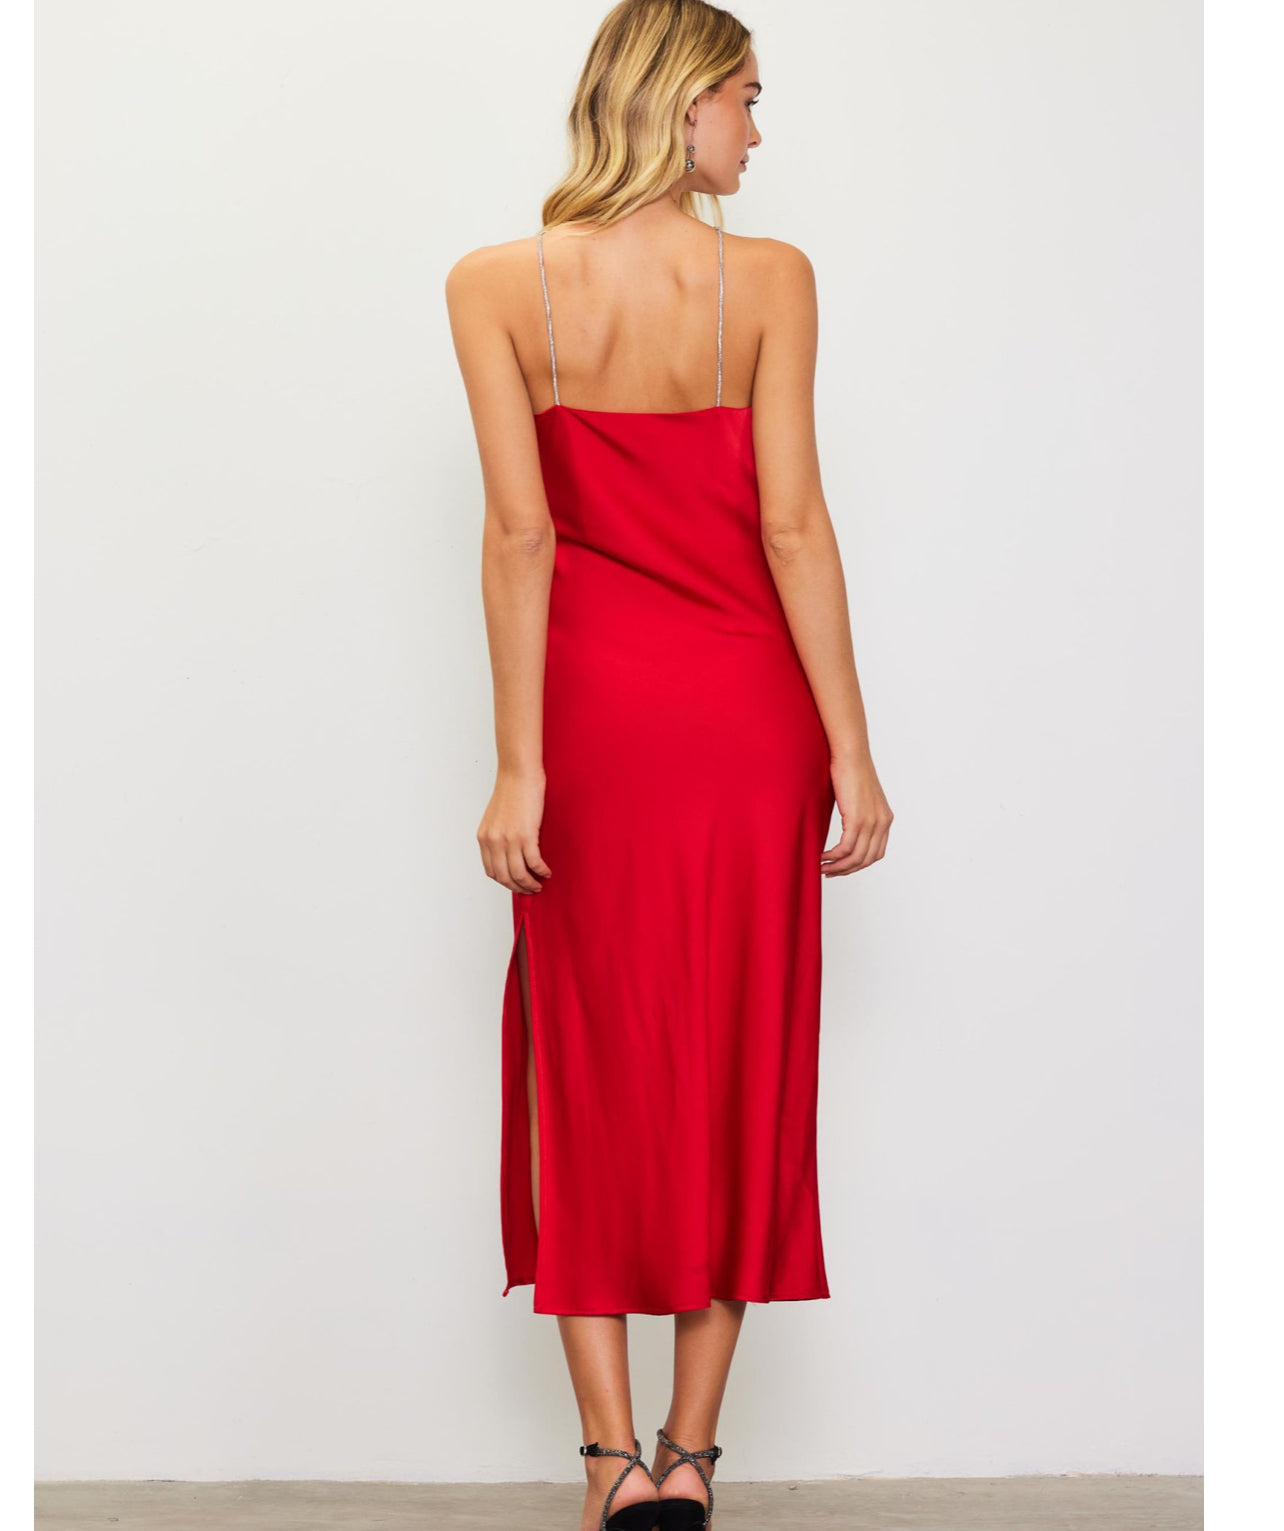 Red Rosette Halter Dress With Embellished Strap